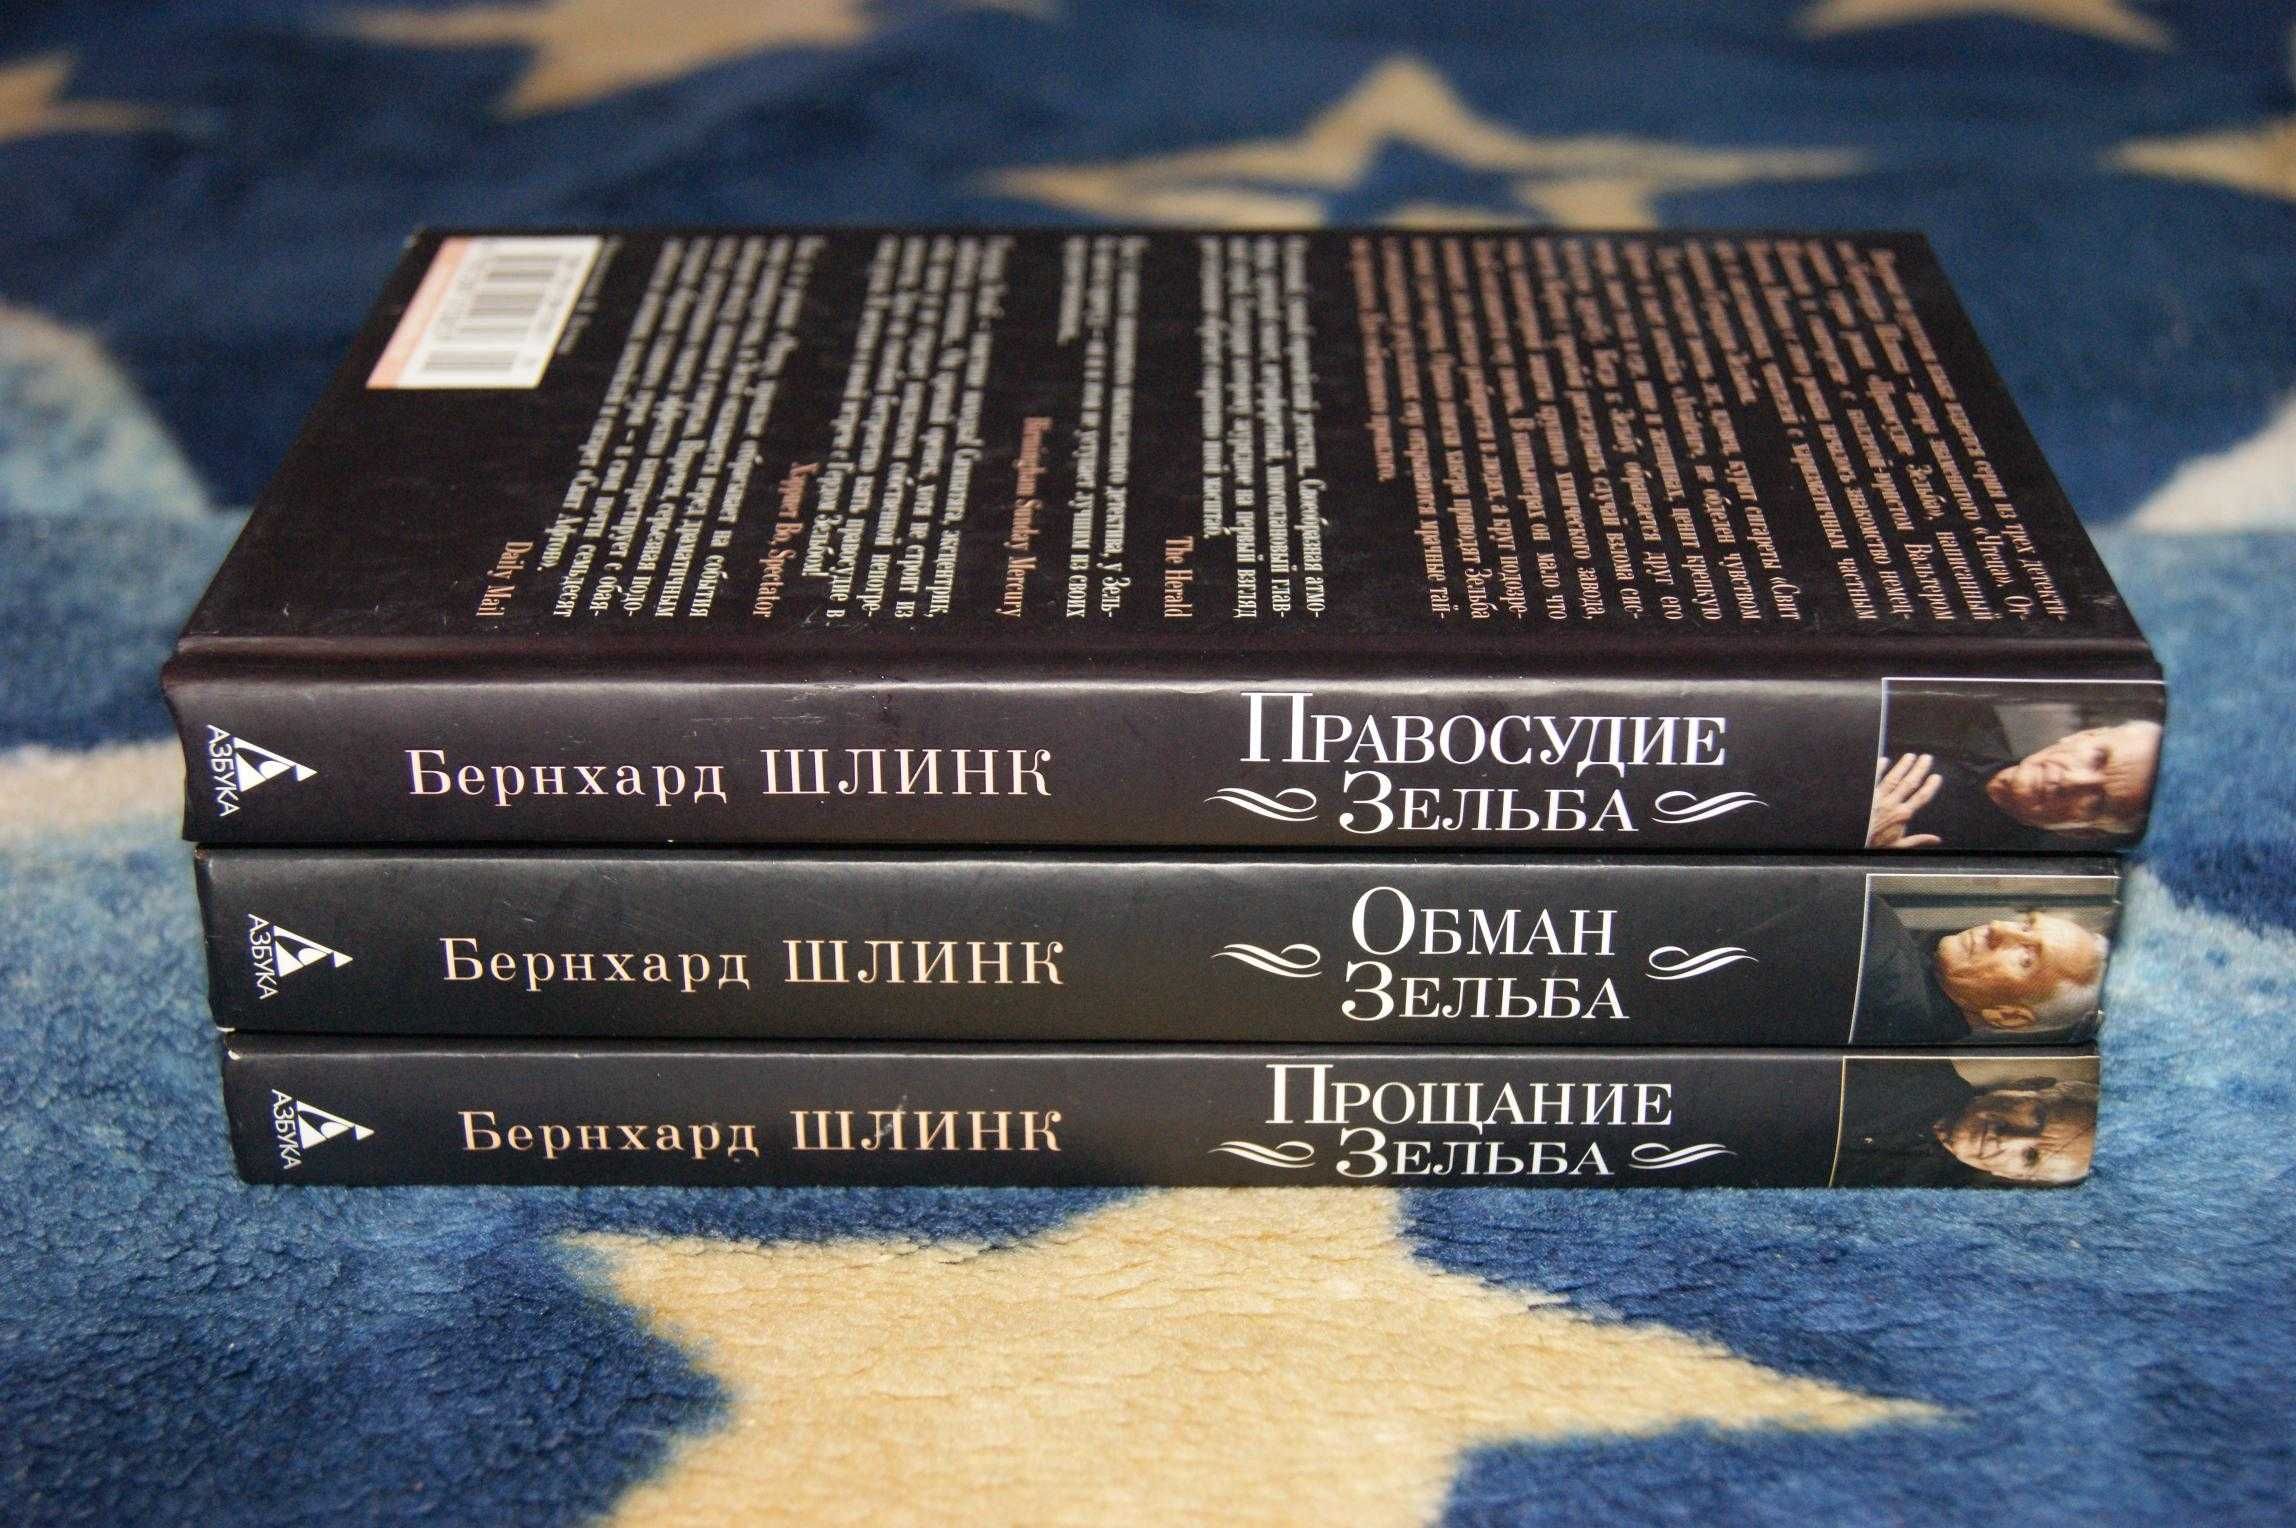 Три книги Правосудие, Обман, Прощание Зельба Бернхард Шлинк